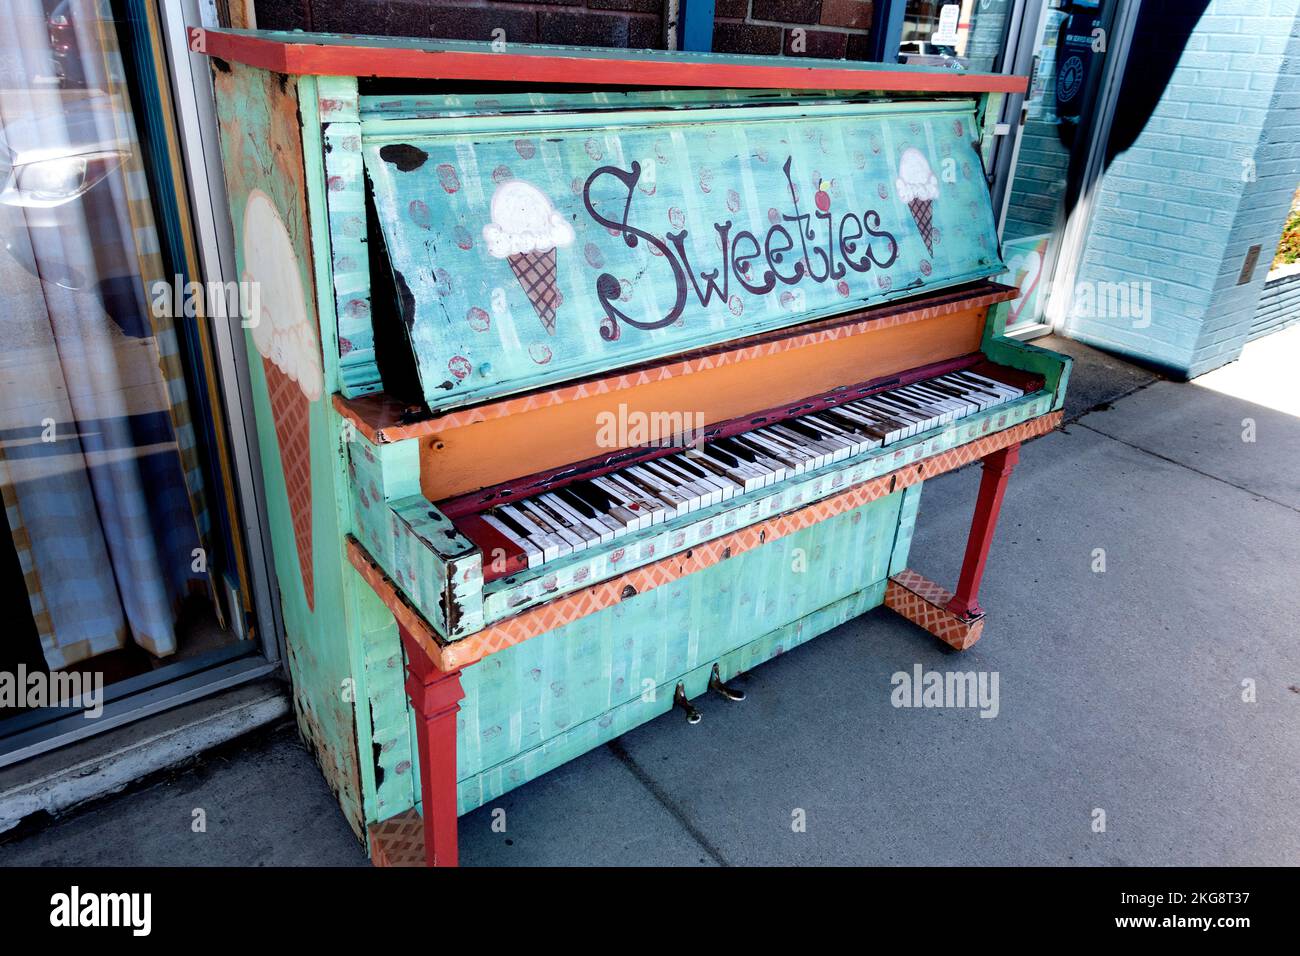 Auf dem Bürgersteig wurde ein zerbrochenes Klavier mit Werbung für den Sweeties Ice Cream Shop in der Nähe dekoriert. Fergus Falls, Minnesota, USA Stockfoto